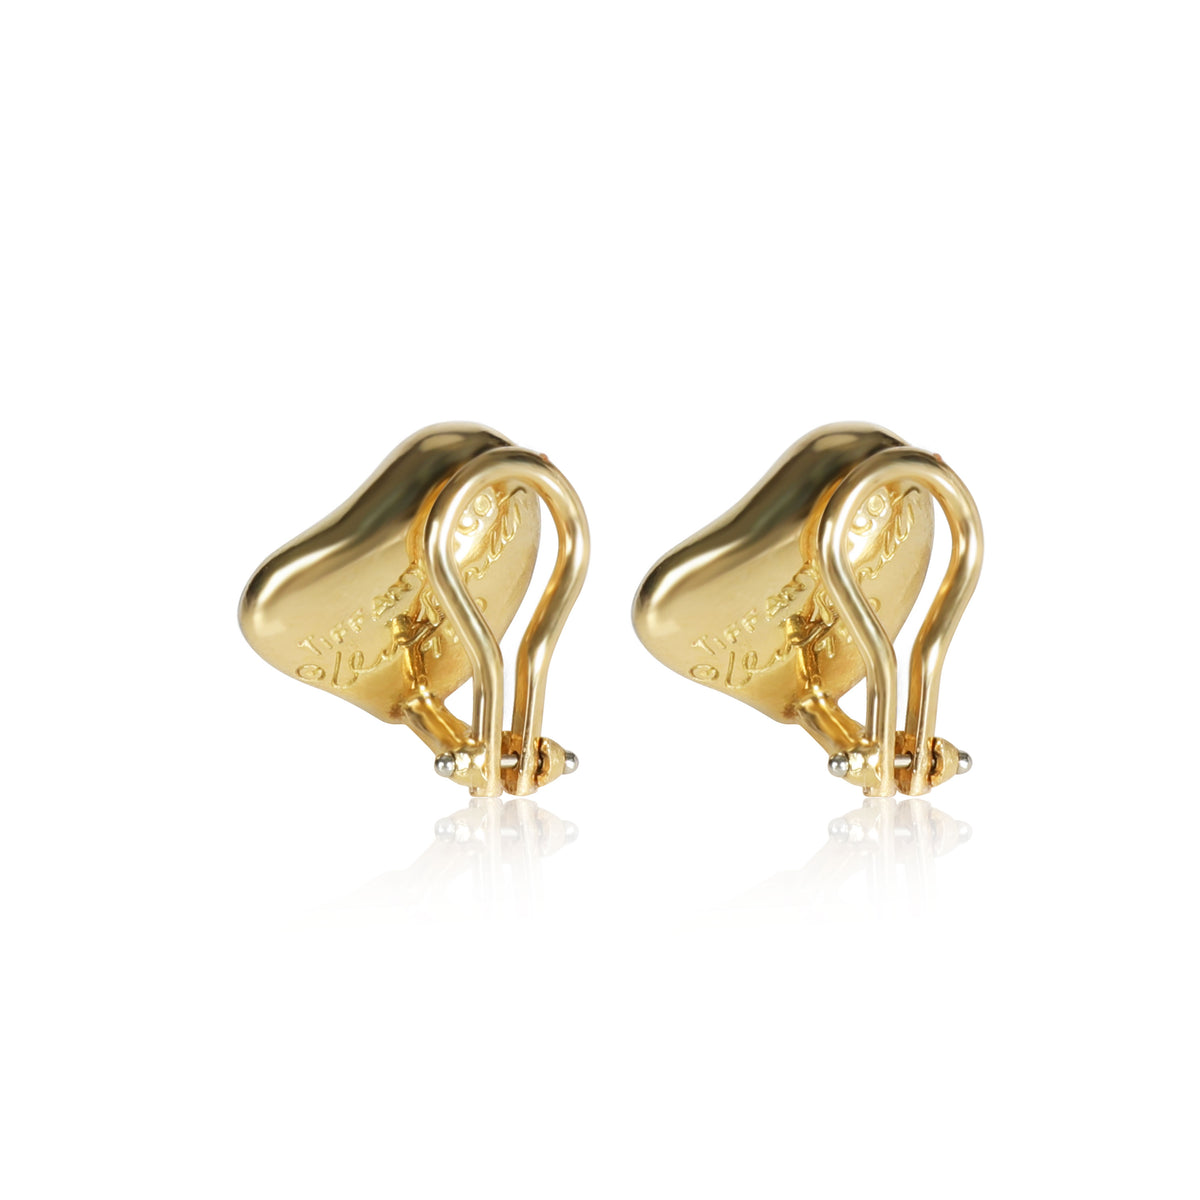 Tiffany & Co. Elsa Peretti Full Heart Diamond Earrings in 18K Gold 0.50 CTW